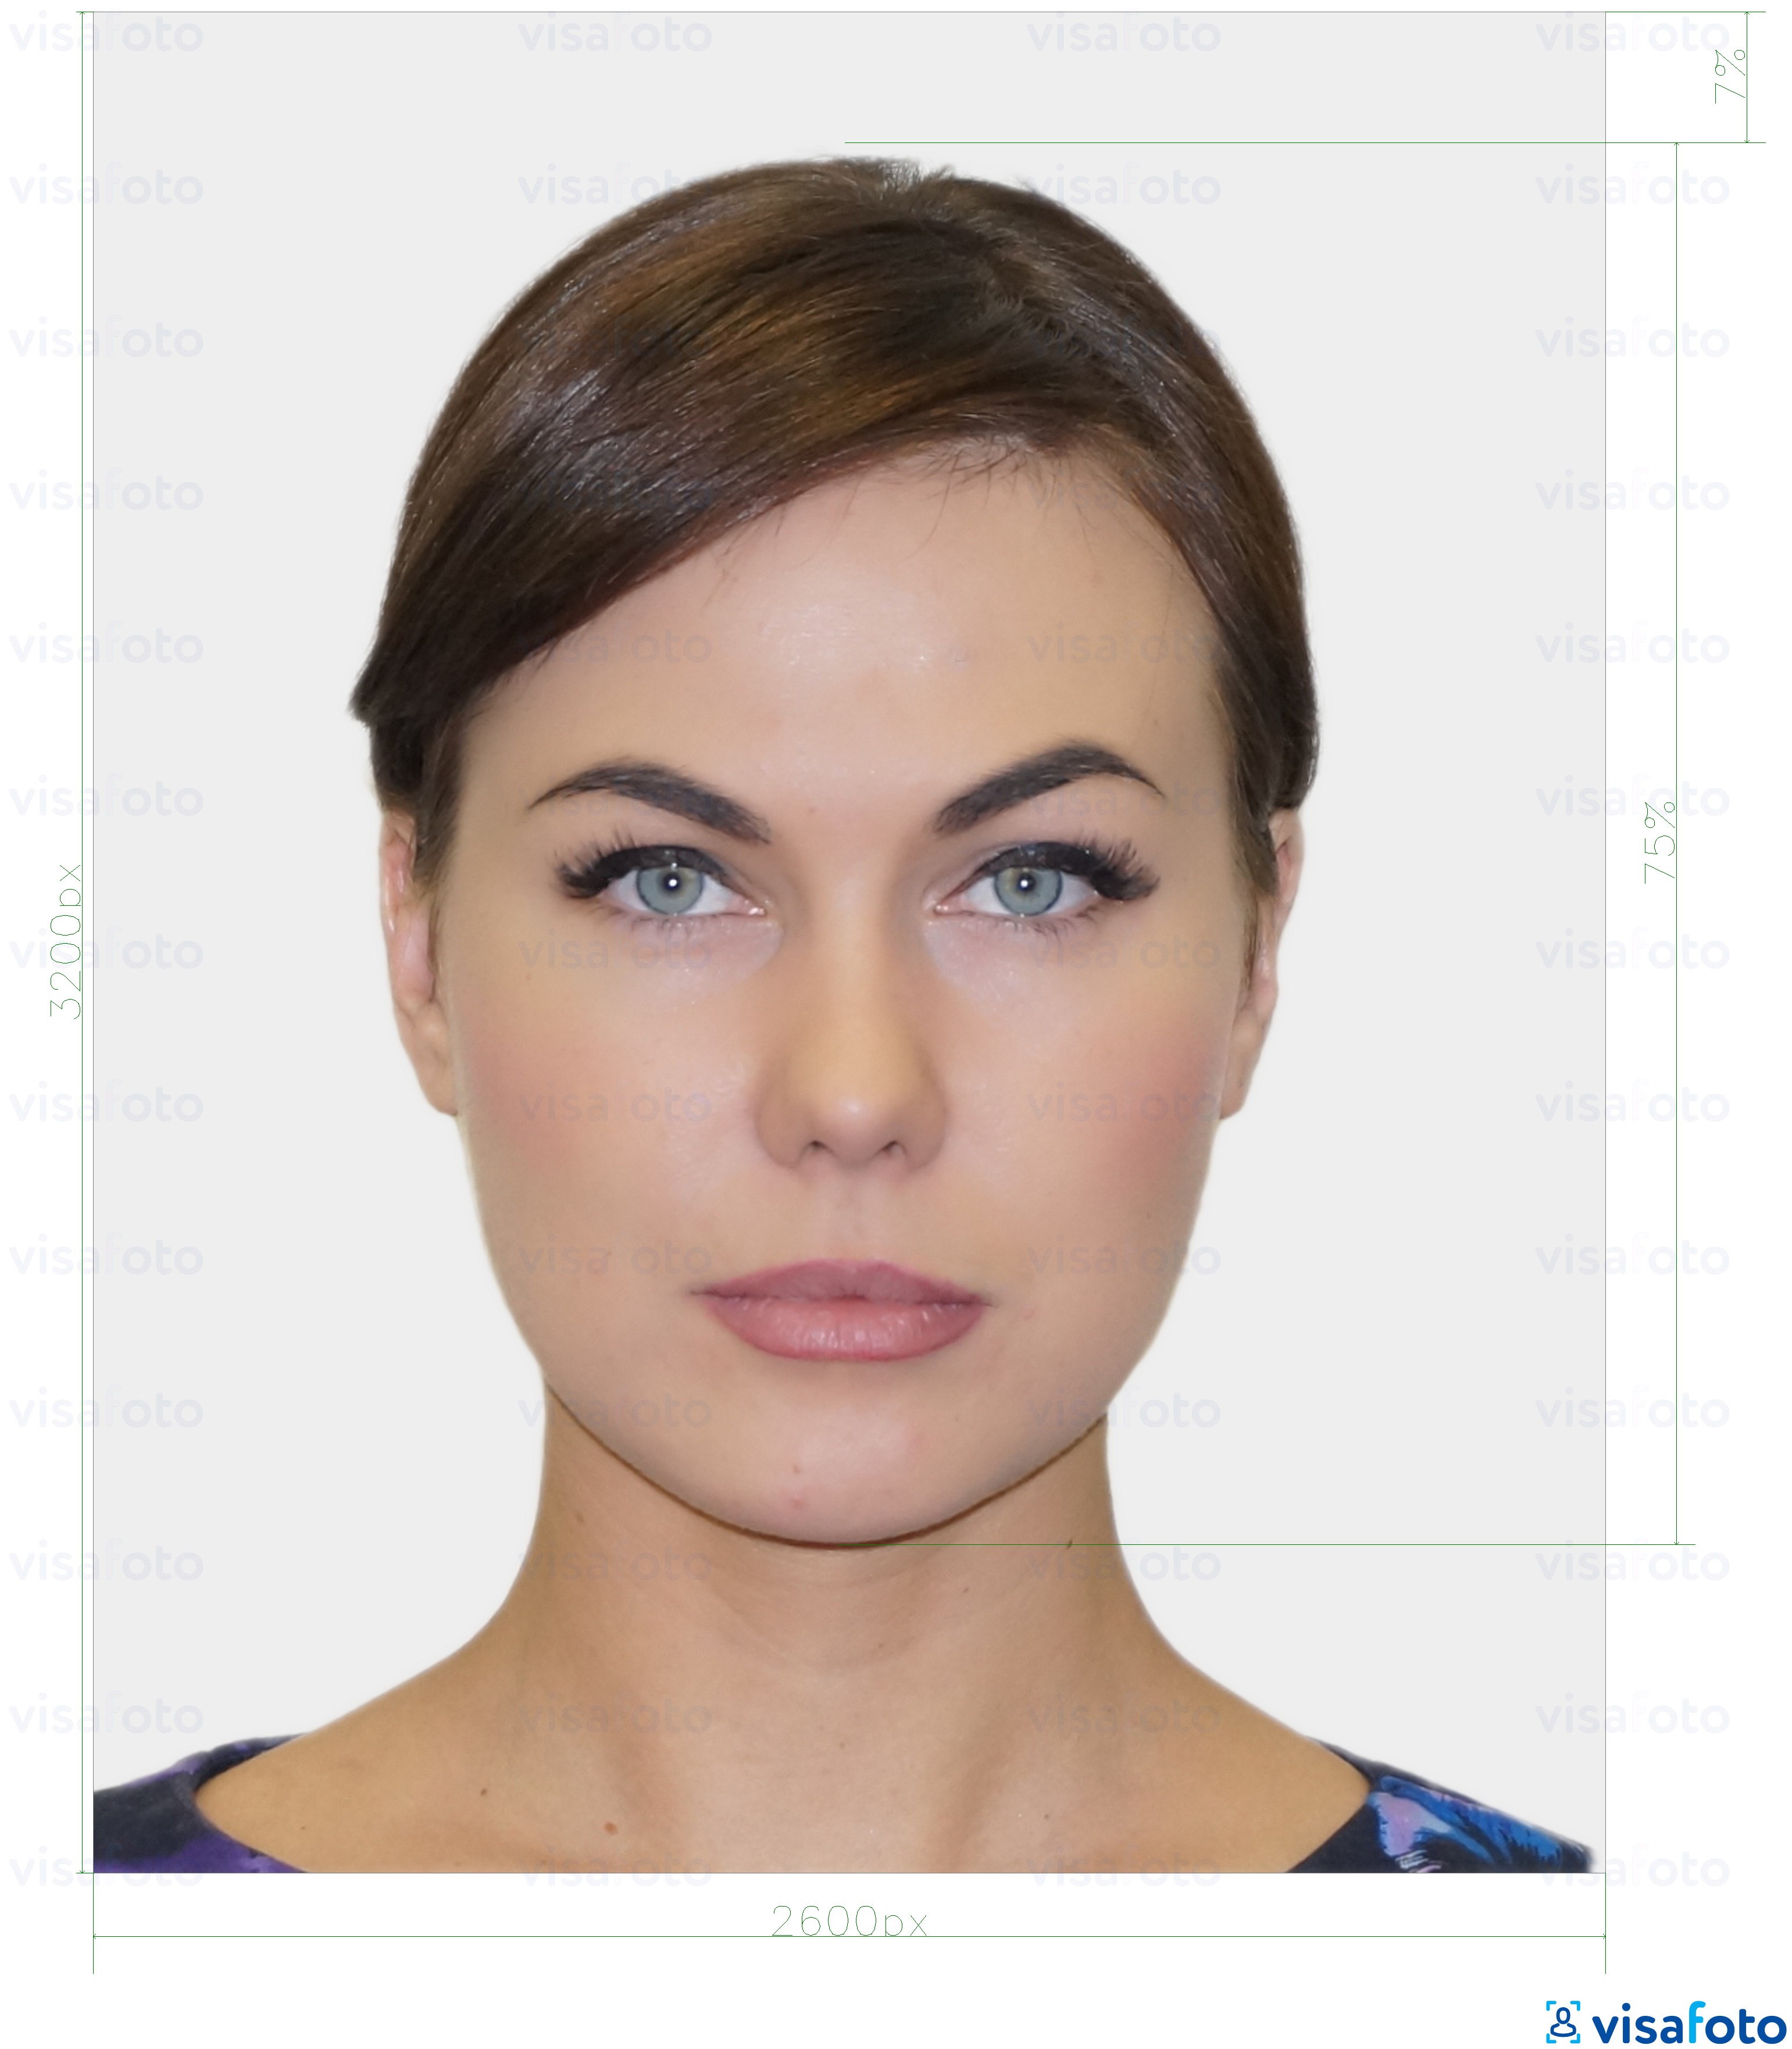 نمونه ی یک عکس برای کارت صدور گواهینامه دیجیتال استونی 1300x1600 پیکسل با مشخصات دقیق